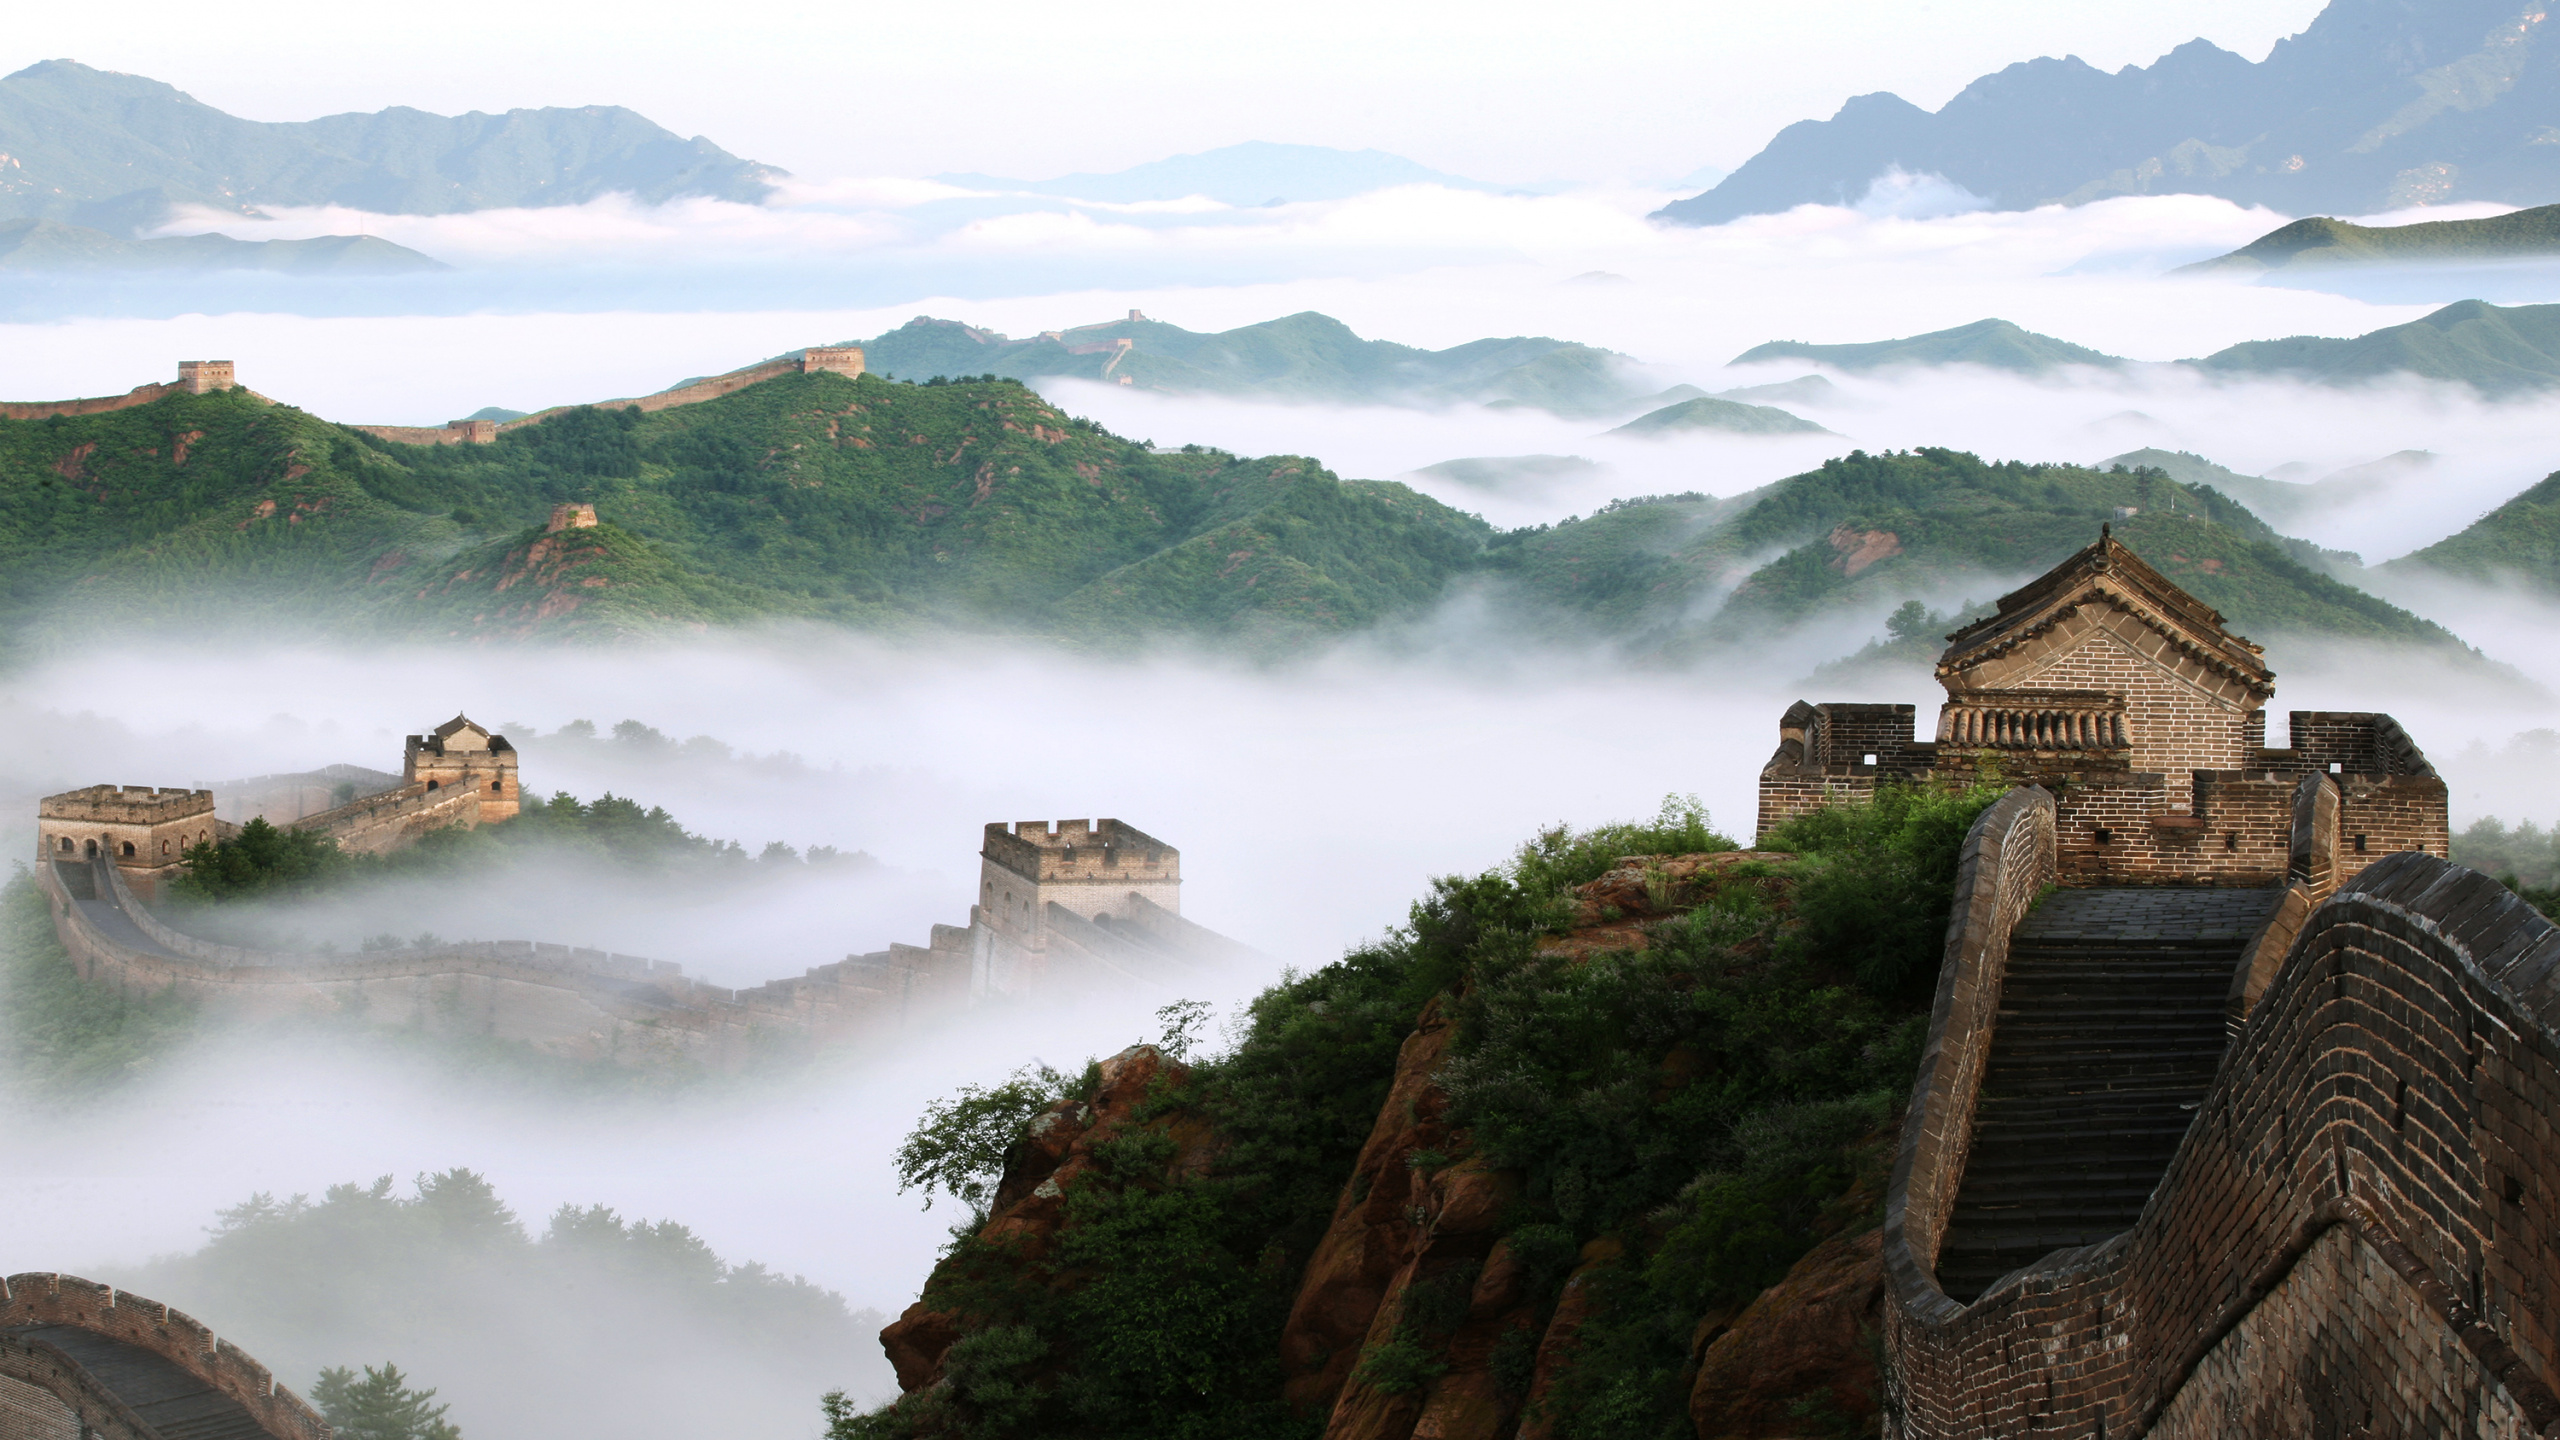 中国的长城, 高地, 山站, 旅游景点, 天空 壁纸 2560x1440 允许